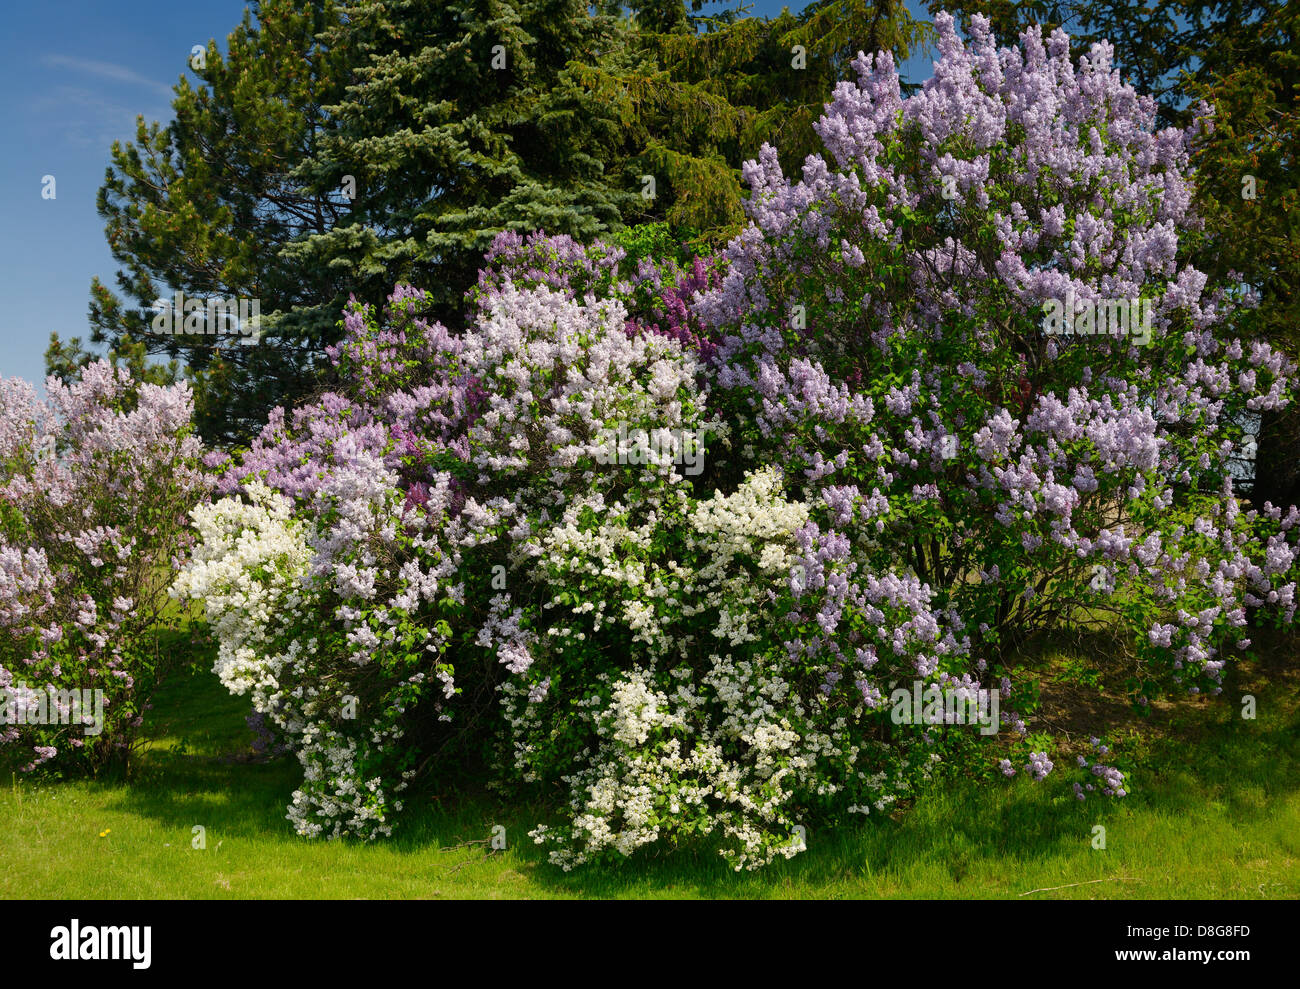 La floraison des buissons de lilas commun naturalisé à côté d'épicéas au printemps toronto canada Banque D'Images